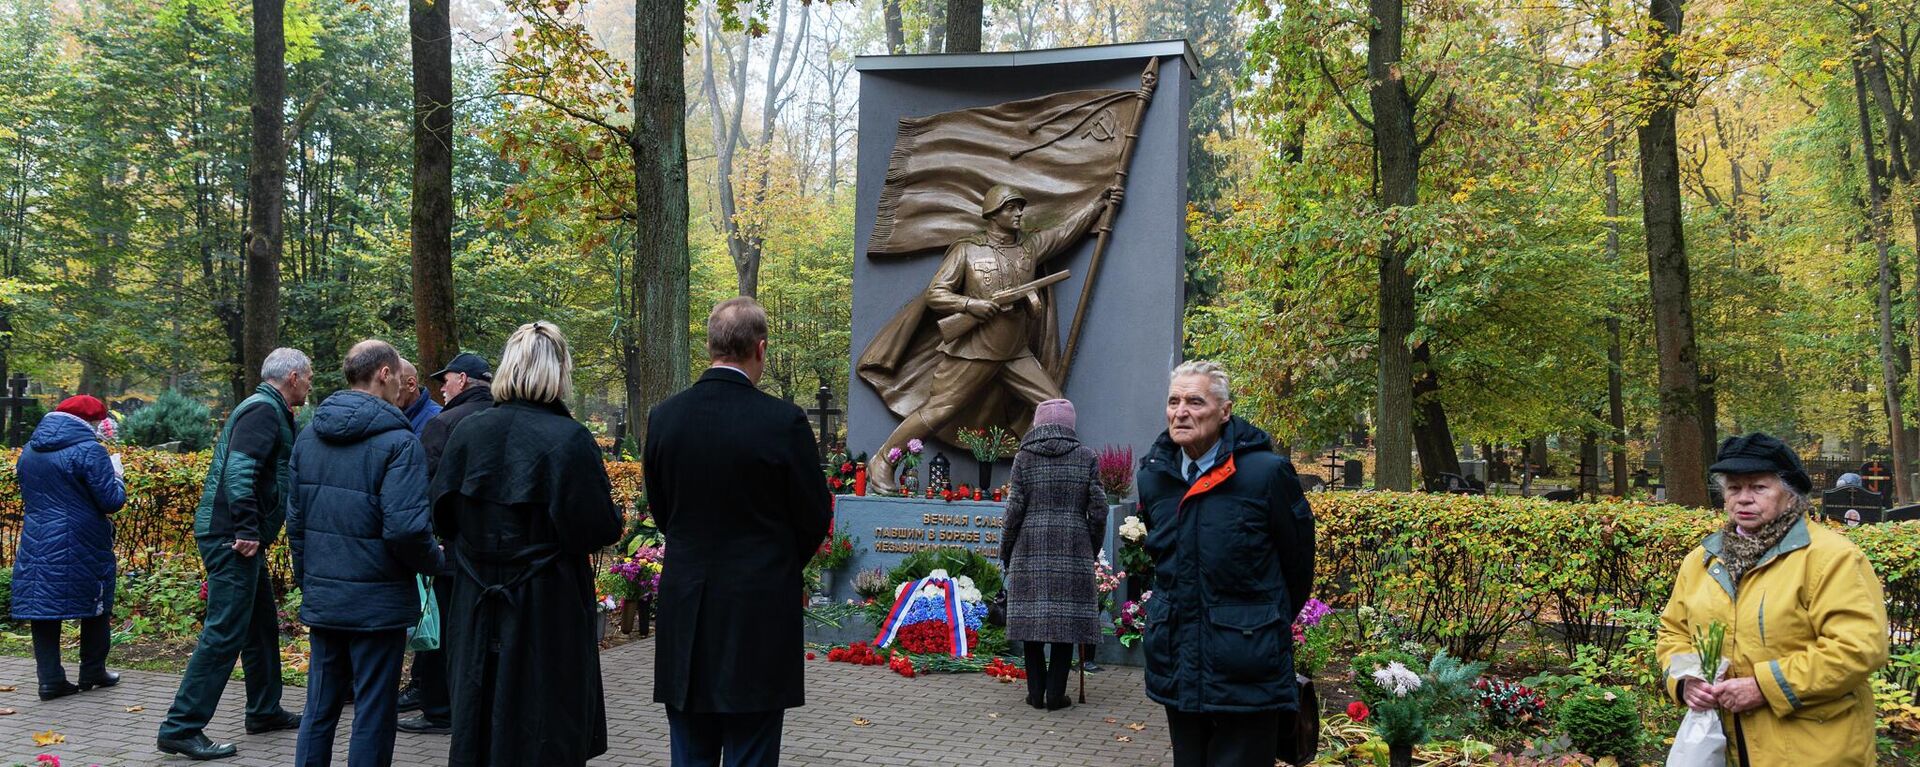 Жители Риги возлагают цветы к мемориалу советским воинам-освободителям на Покровском кладбище в Риге, 13 октября 2022 года - Sputnik Латвия, 1920, 13.10.2022